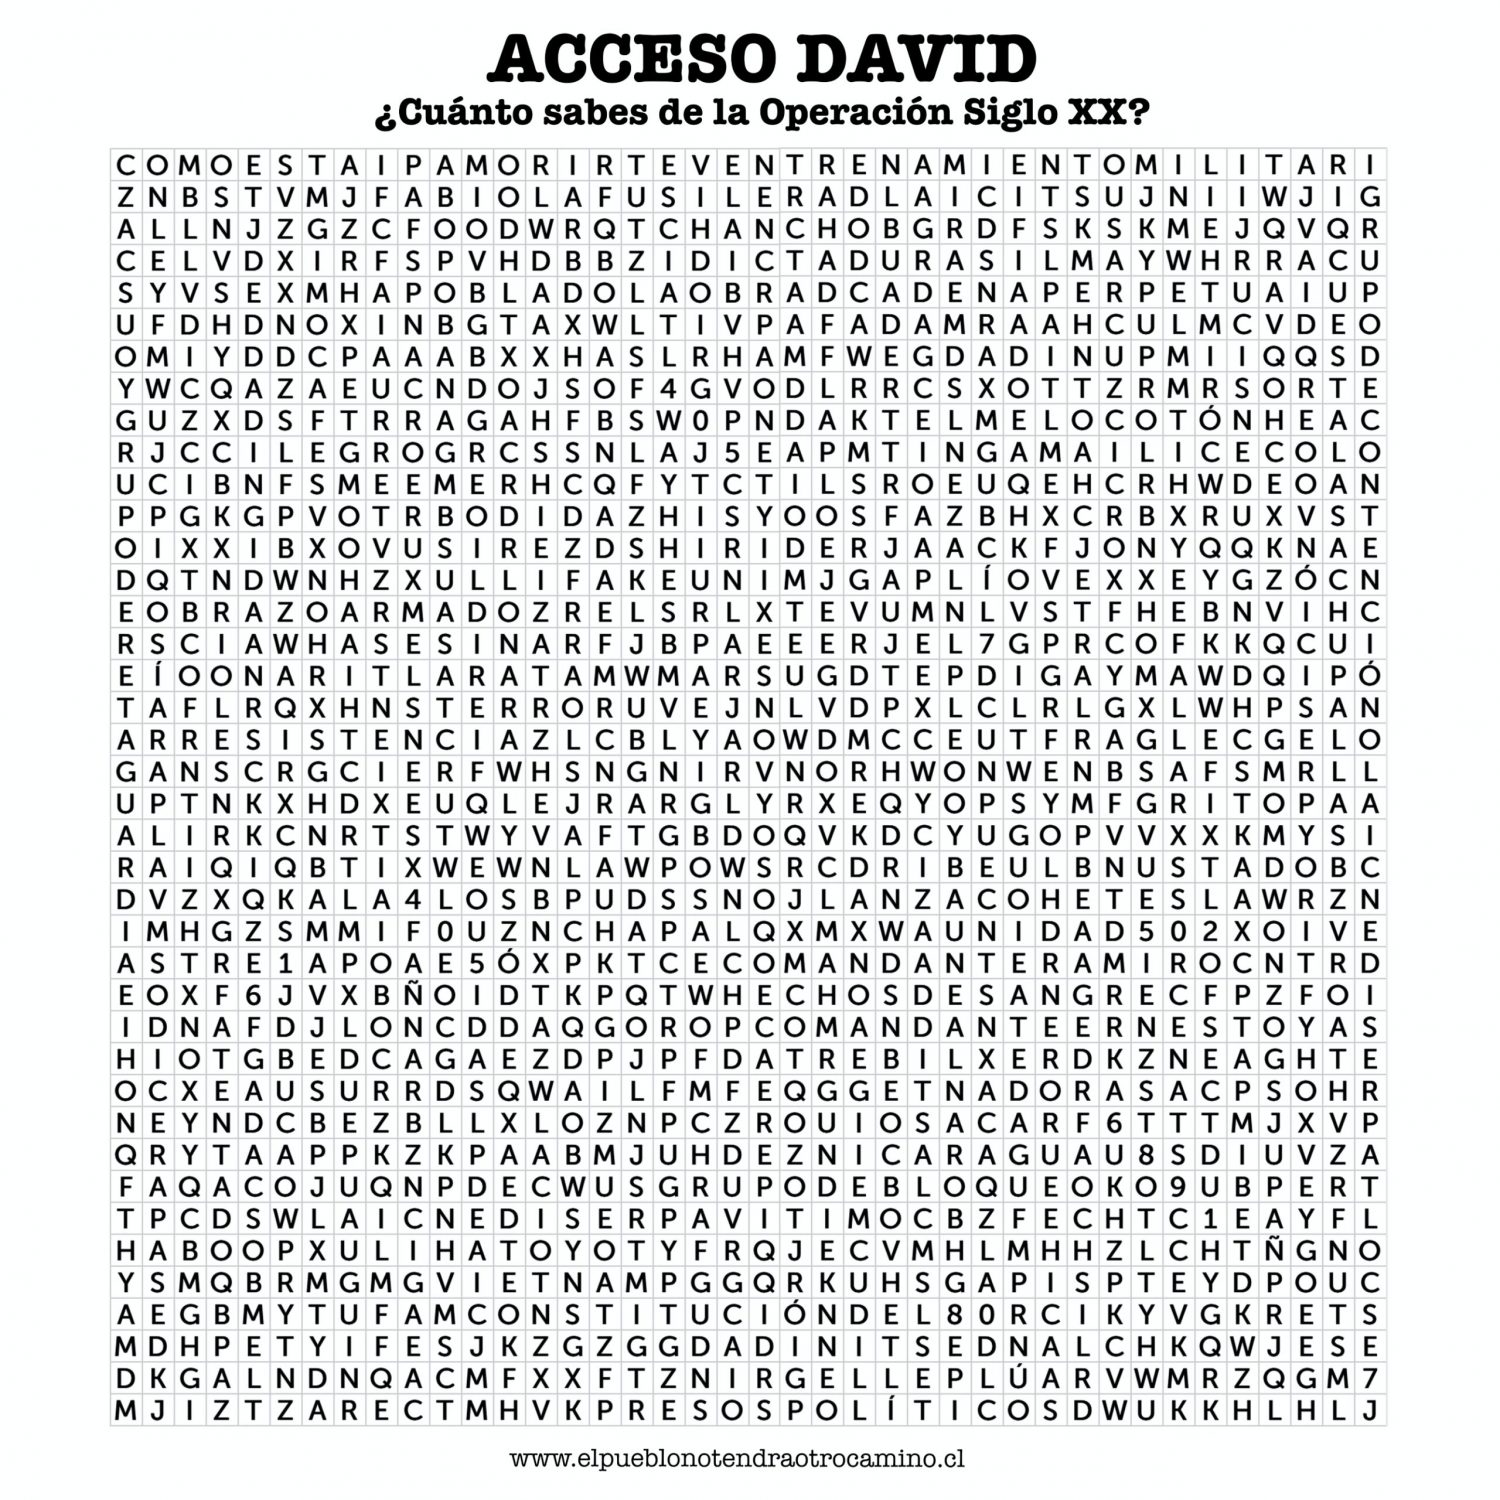 ACCESO DAVID (1)